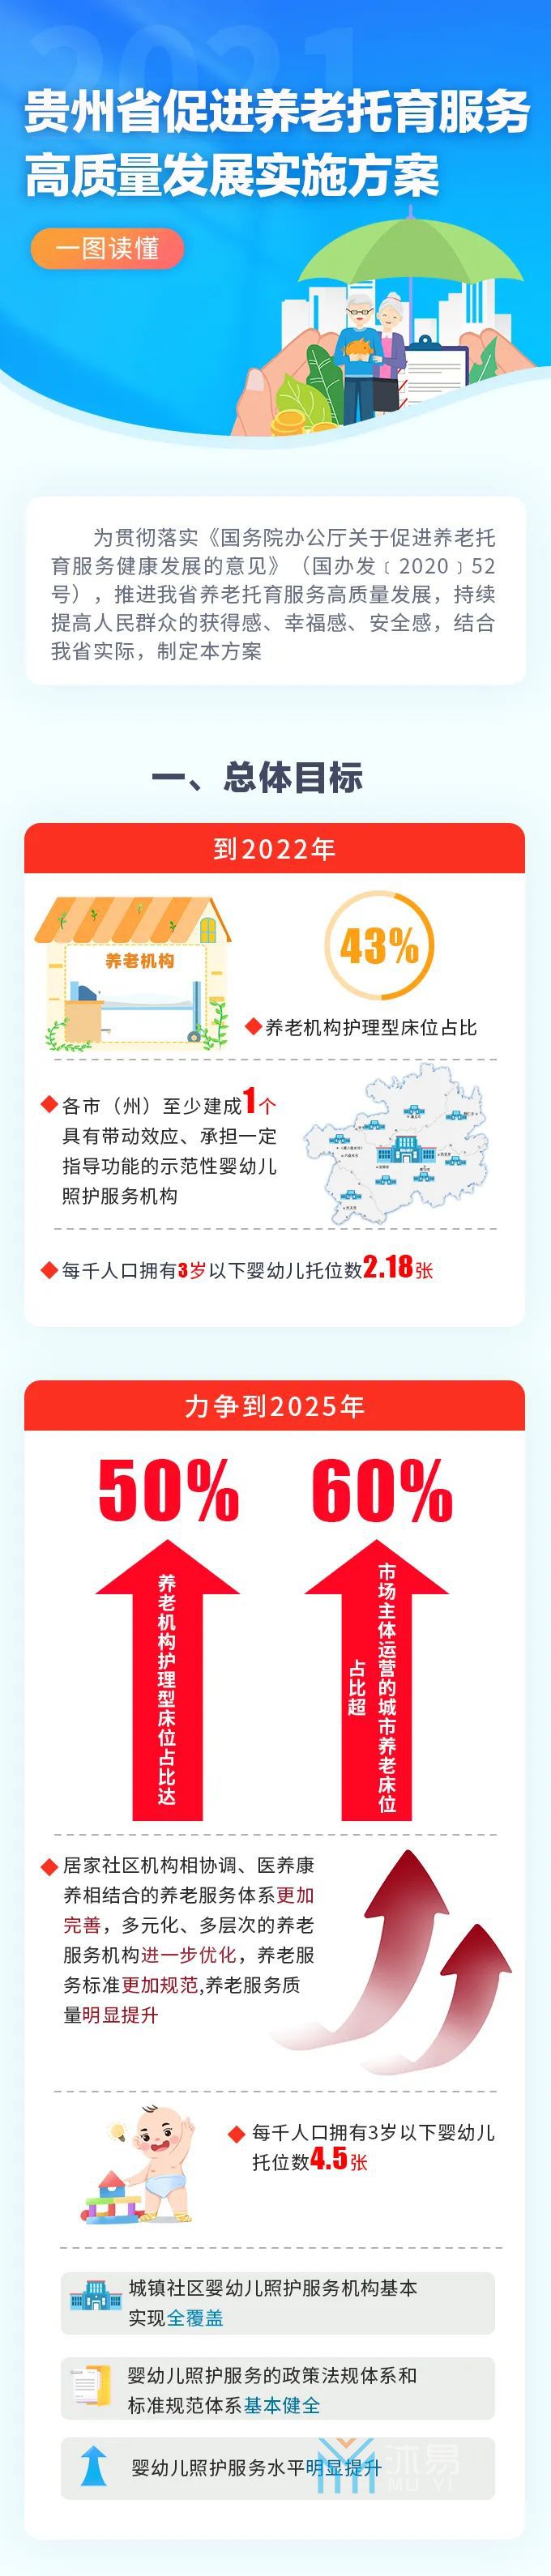 省政府办公厅印发《贵州省促进养老托育服务高质量发展实施方案》(图1)